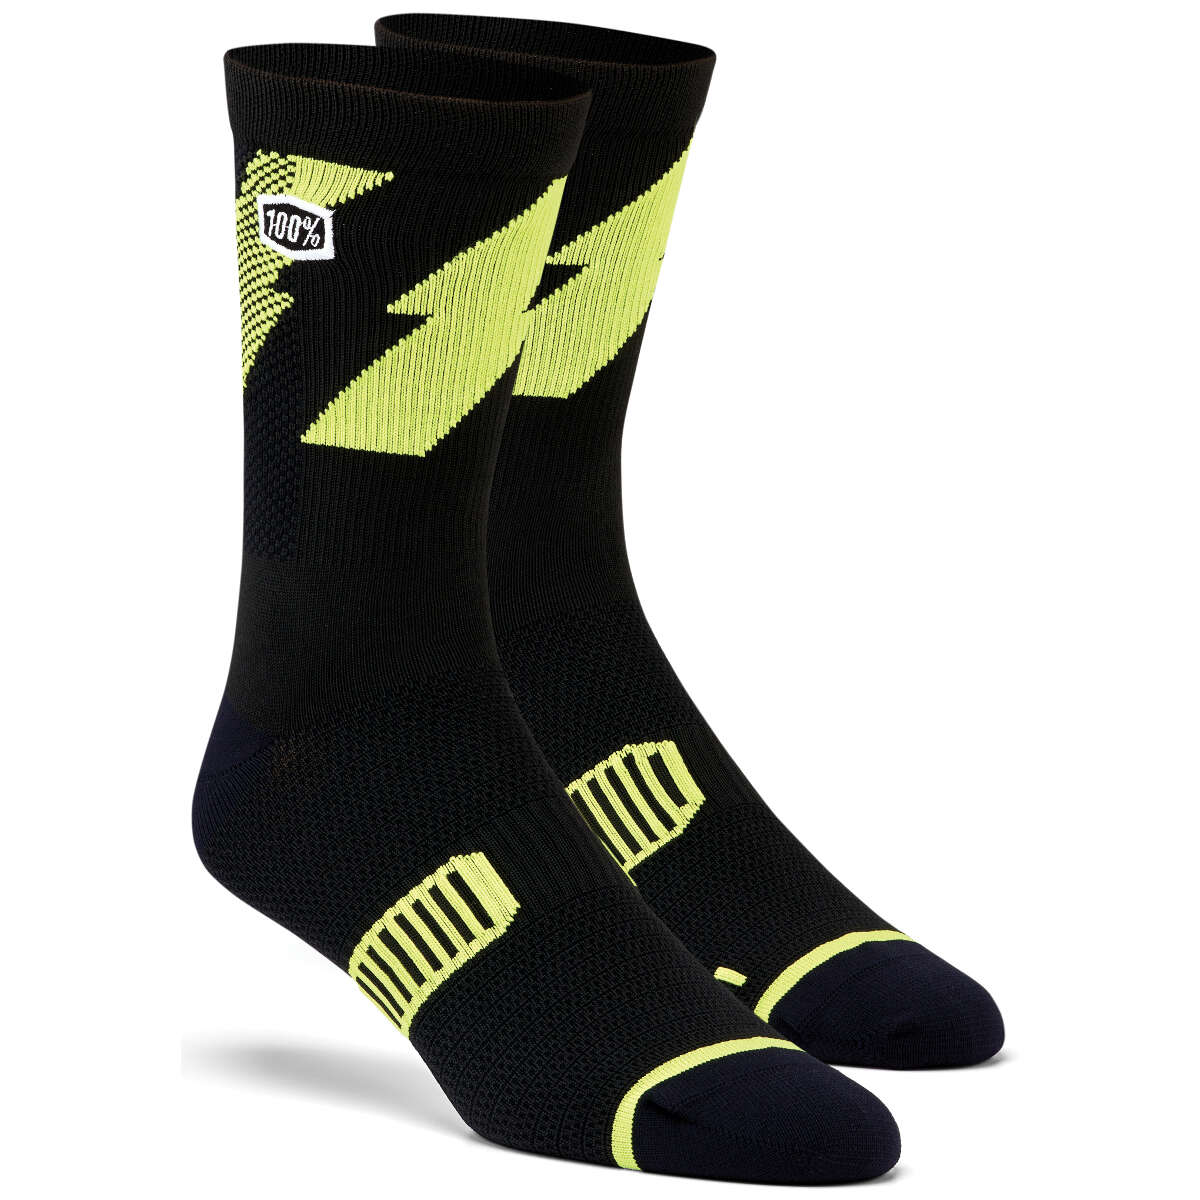 100% Socks Bolt Black/Lime